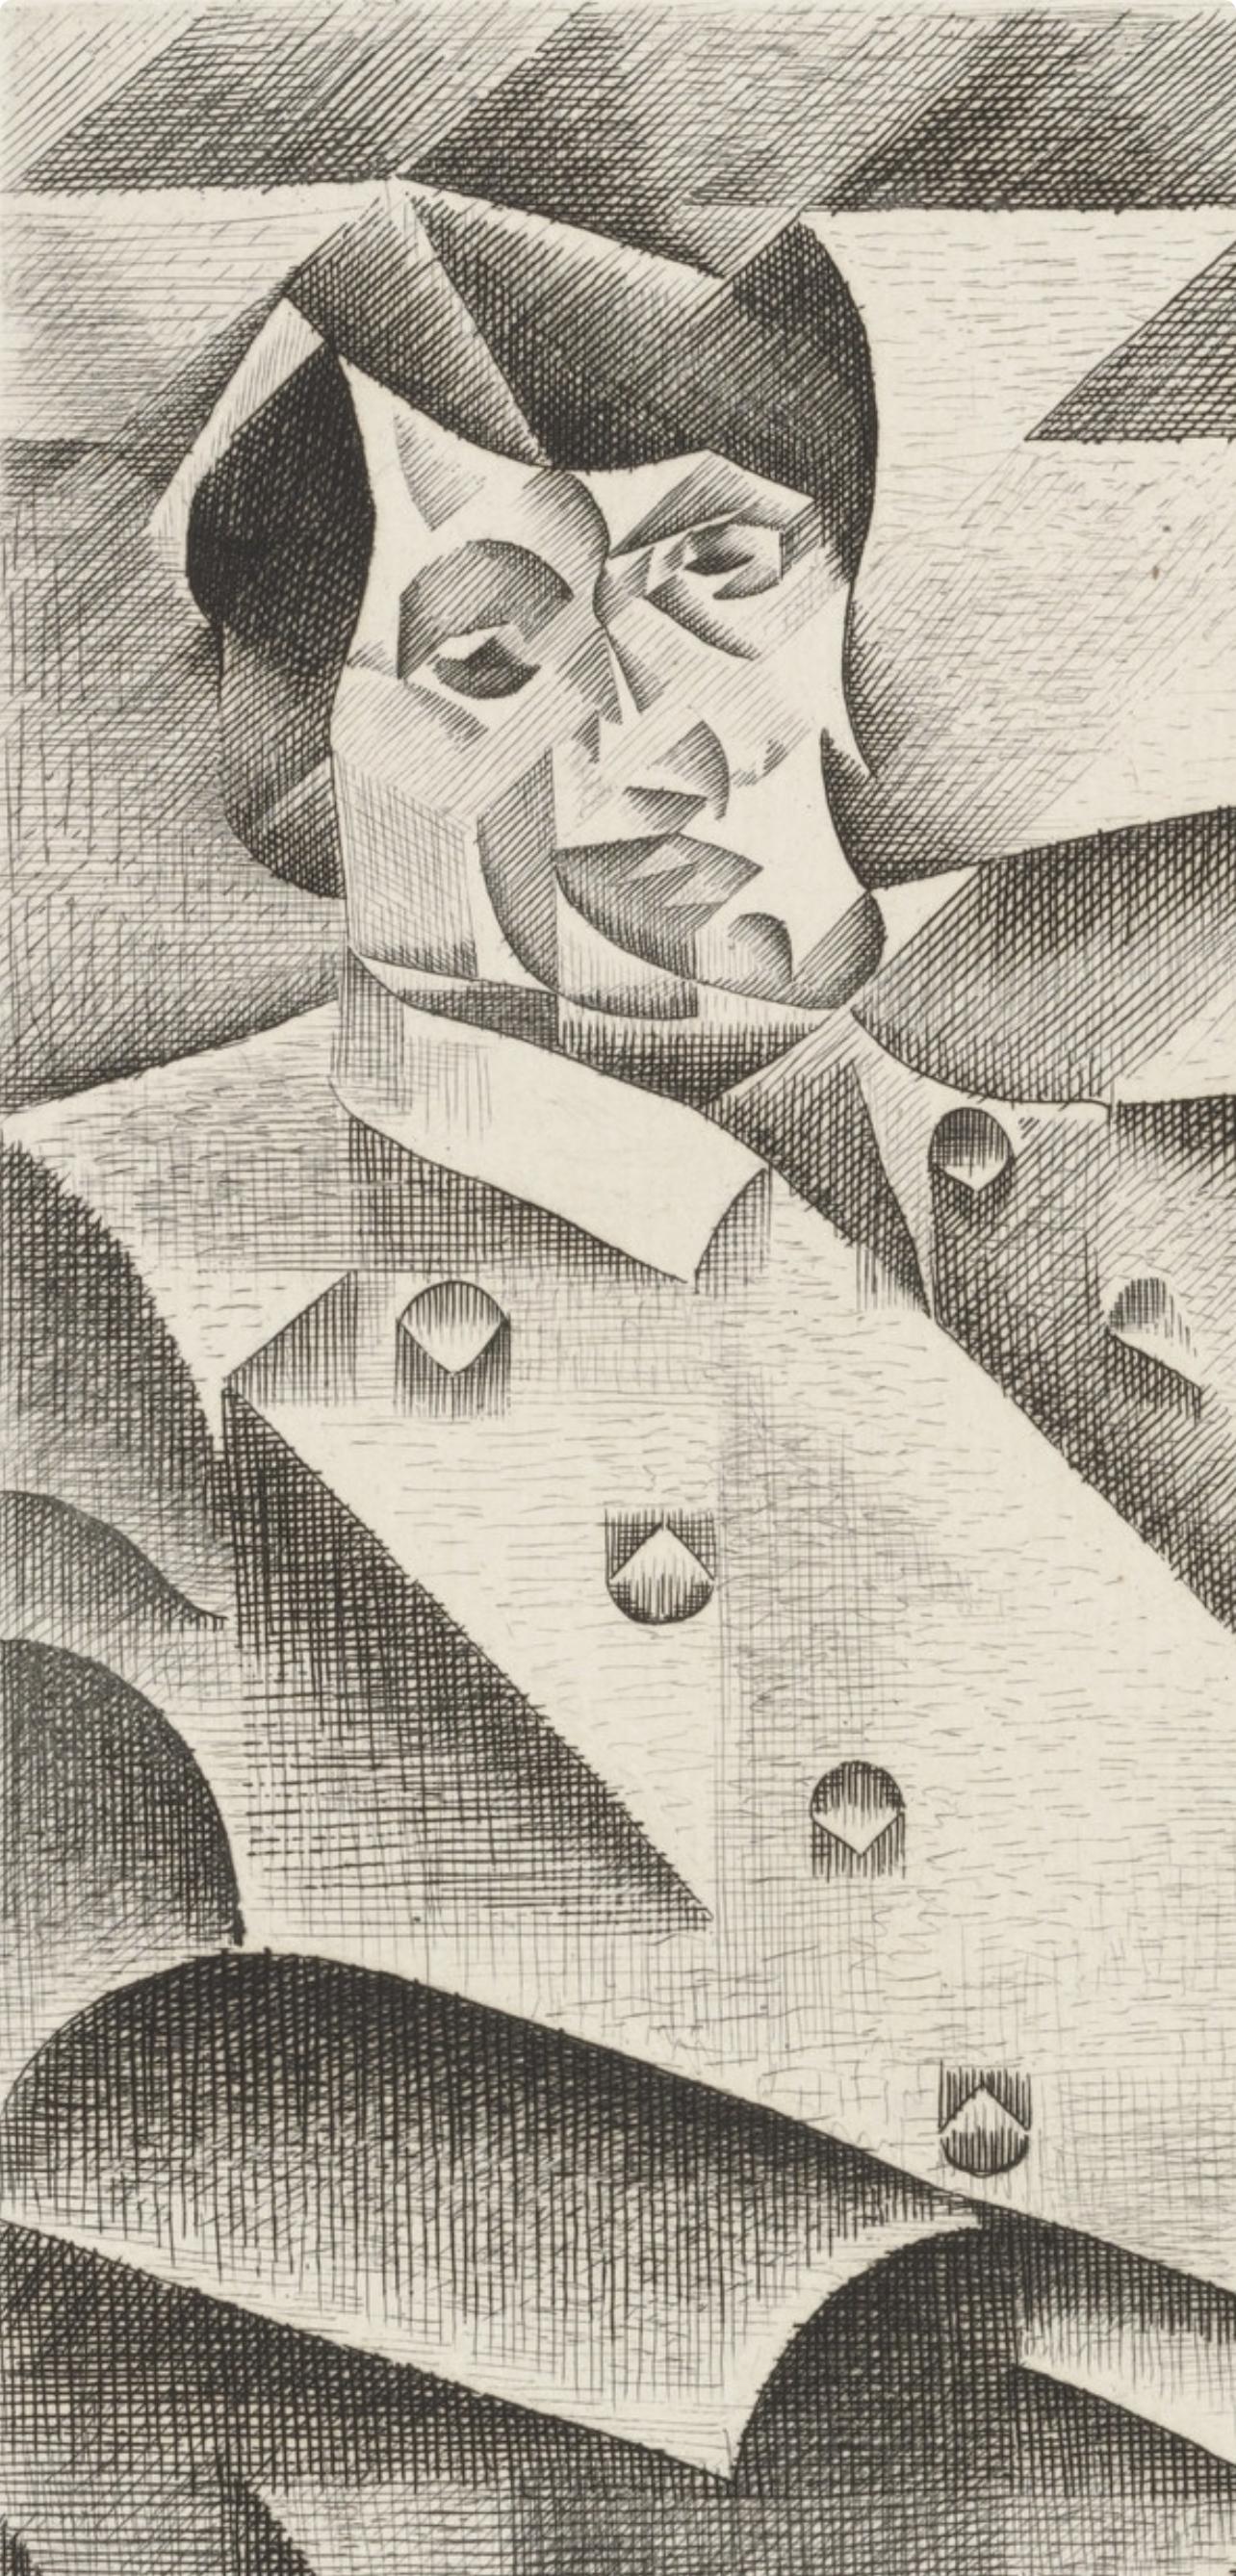 Gris, Komposition, Du cubisme (nach) – Print von Juan Gris